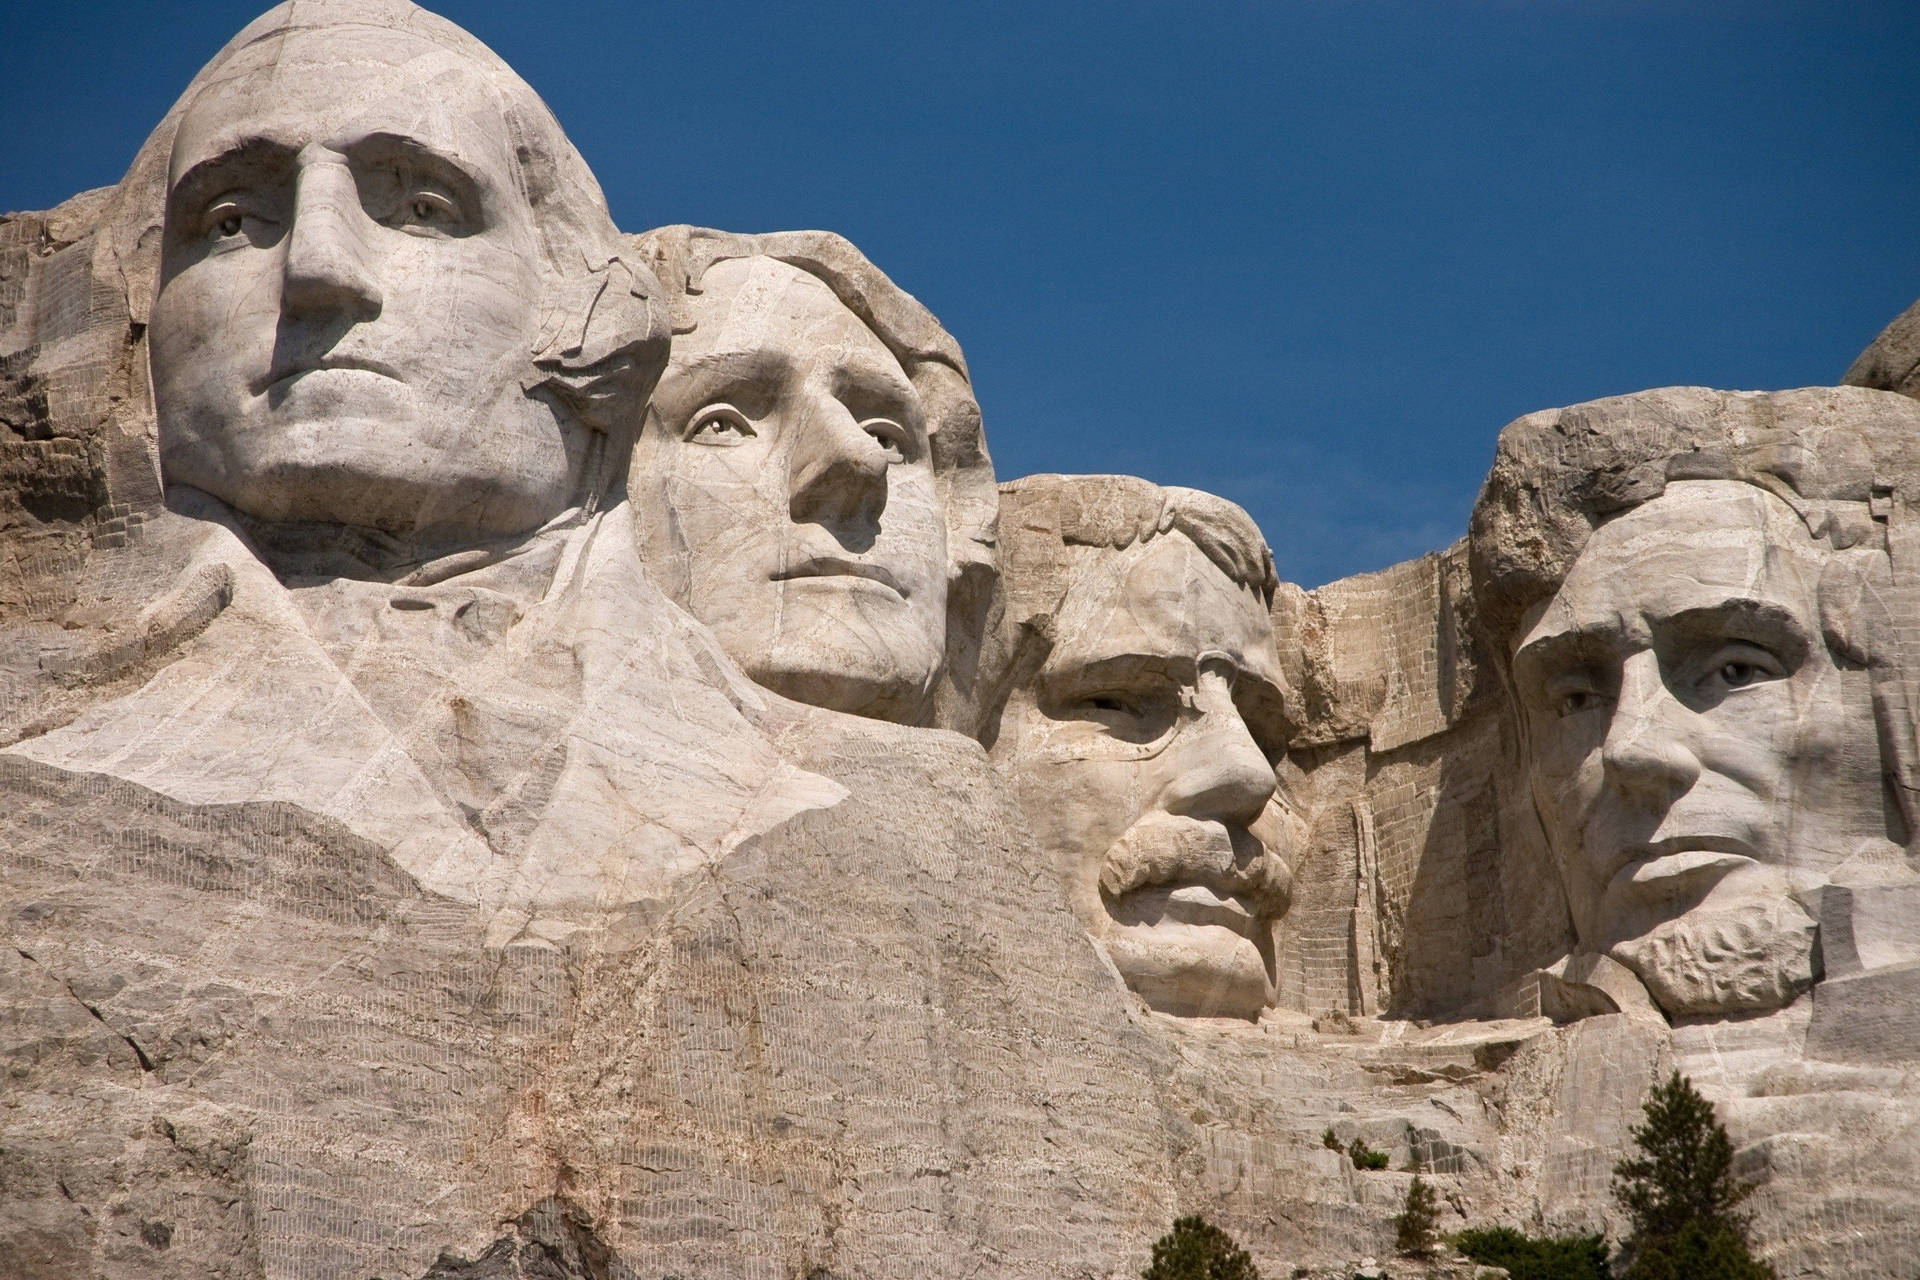 Mount Rushmore med figurer af præsidenter wallpaper. Wallpaper